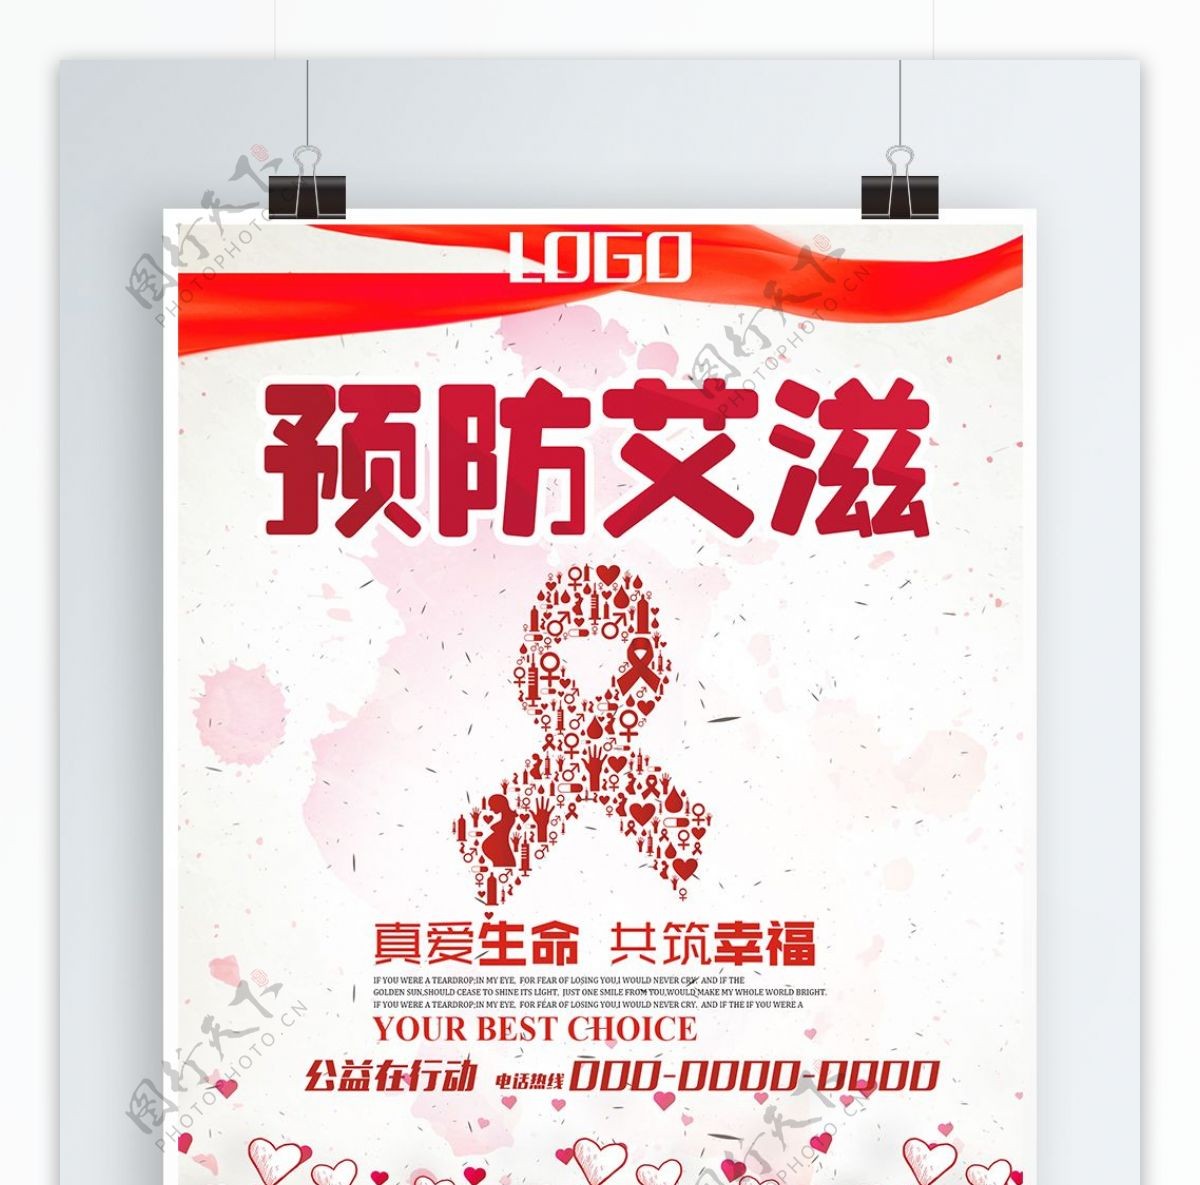 艾滋病日公益原创海报